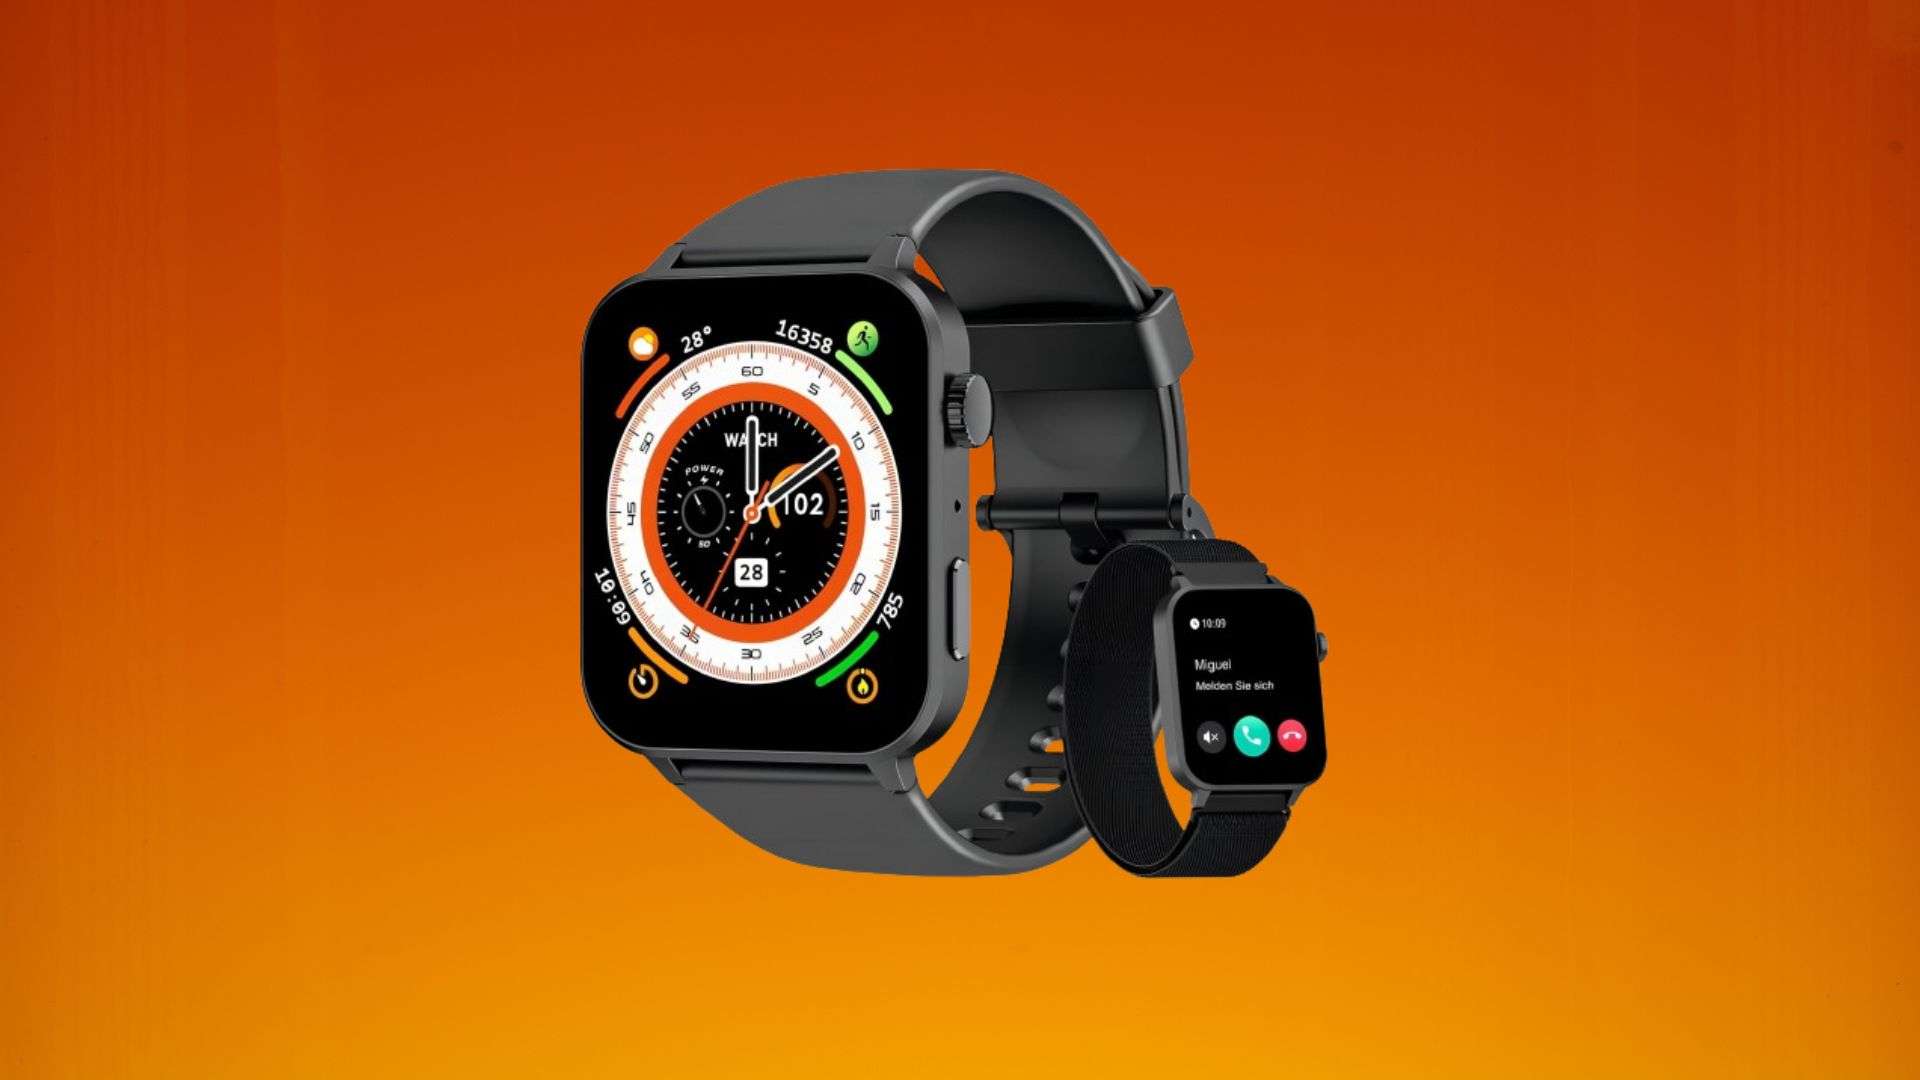  Smartwatch-in-offertissima-su-Amazon-il-prezzo-crolla-a-soli-26-